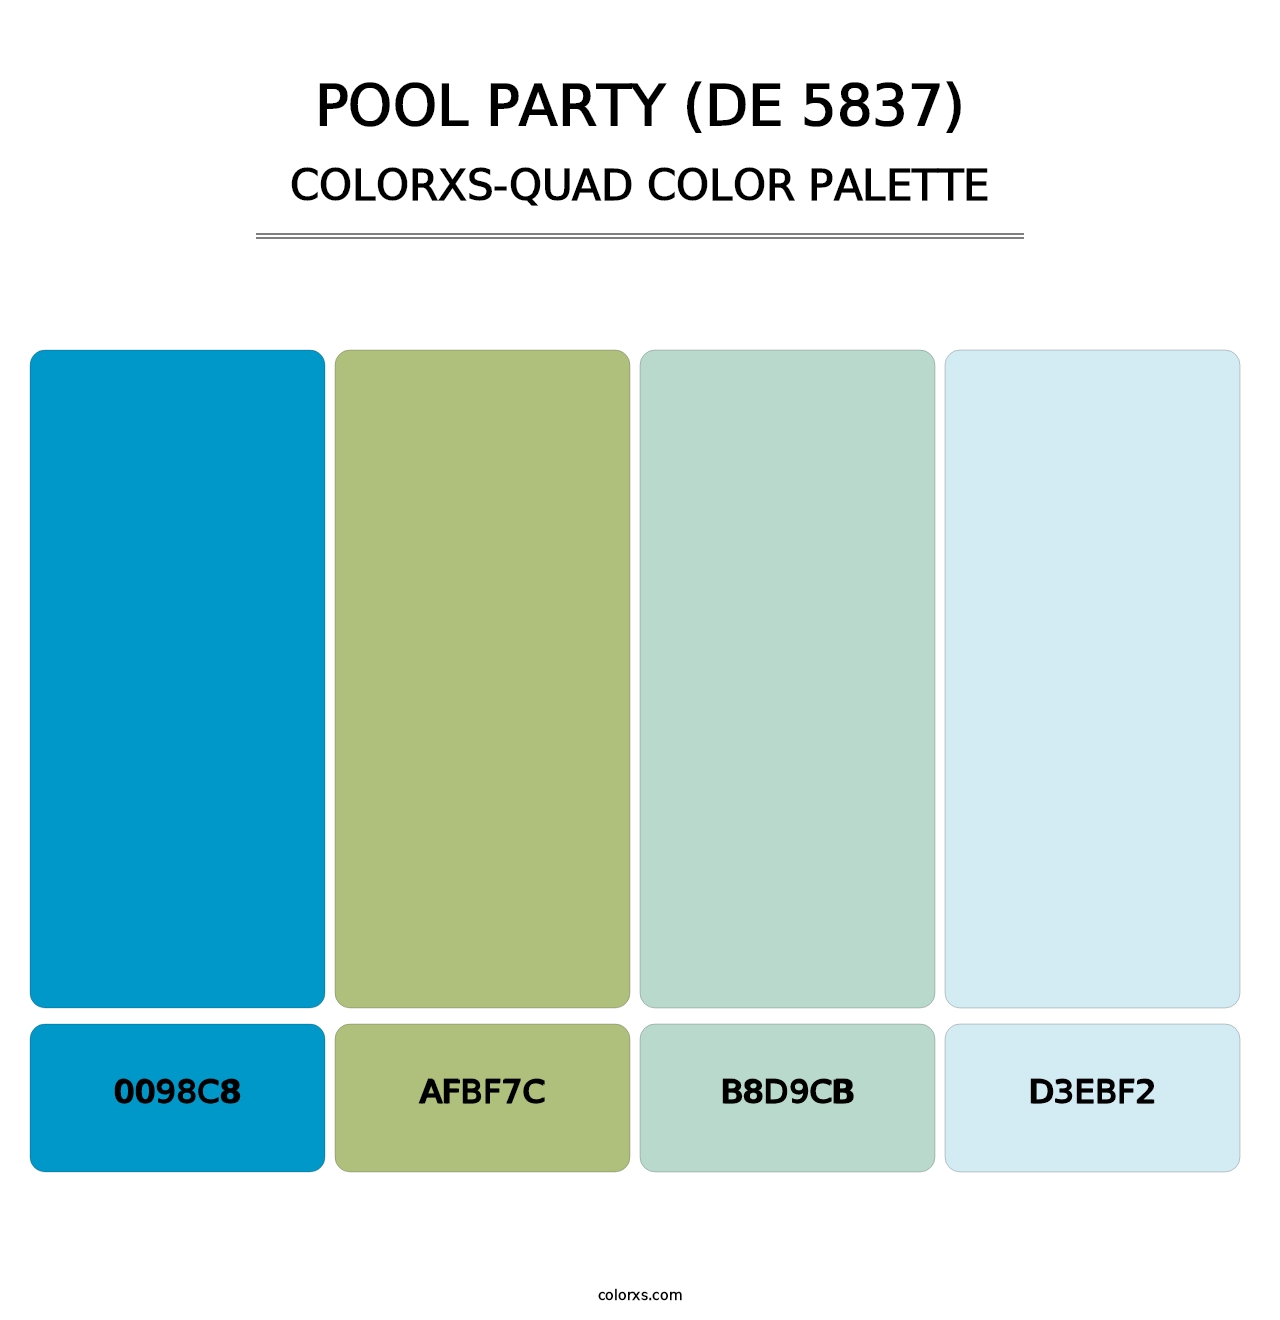 Pool Party (DE 5837) - Colorxs Quad Palette